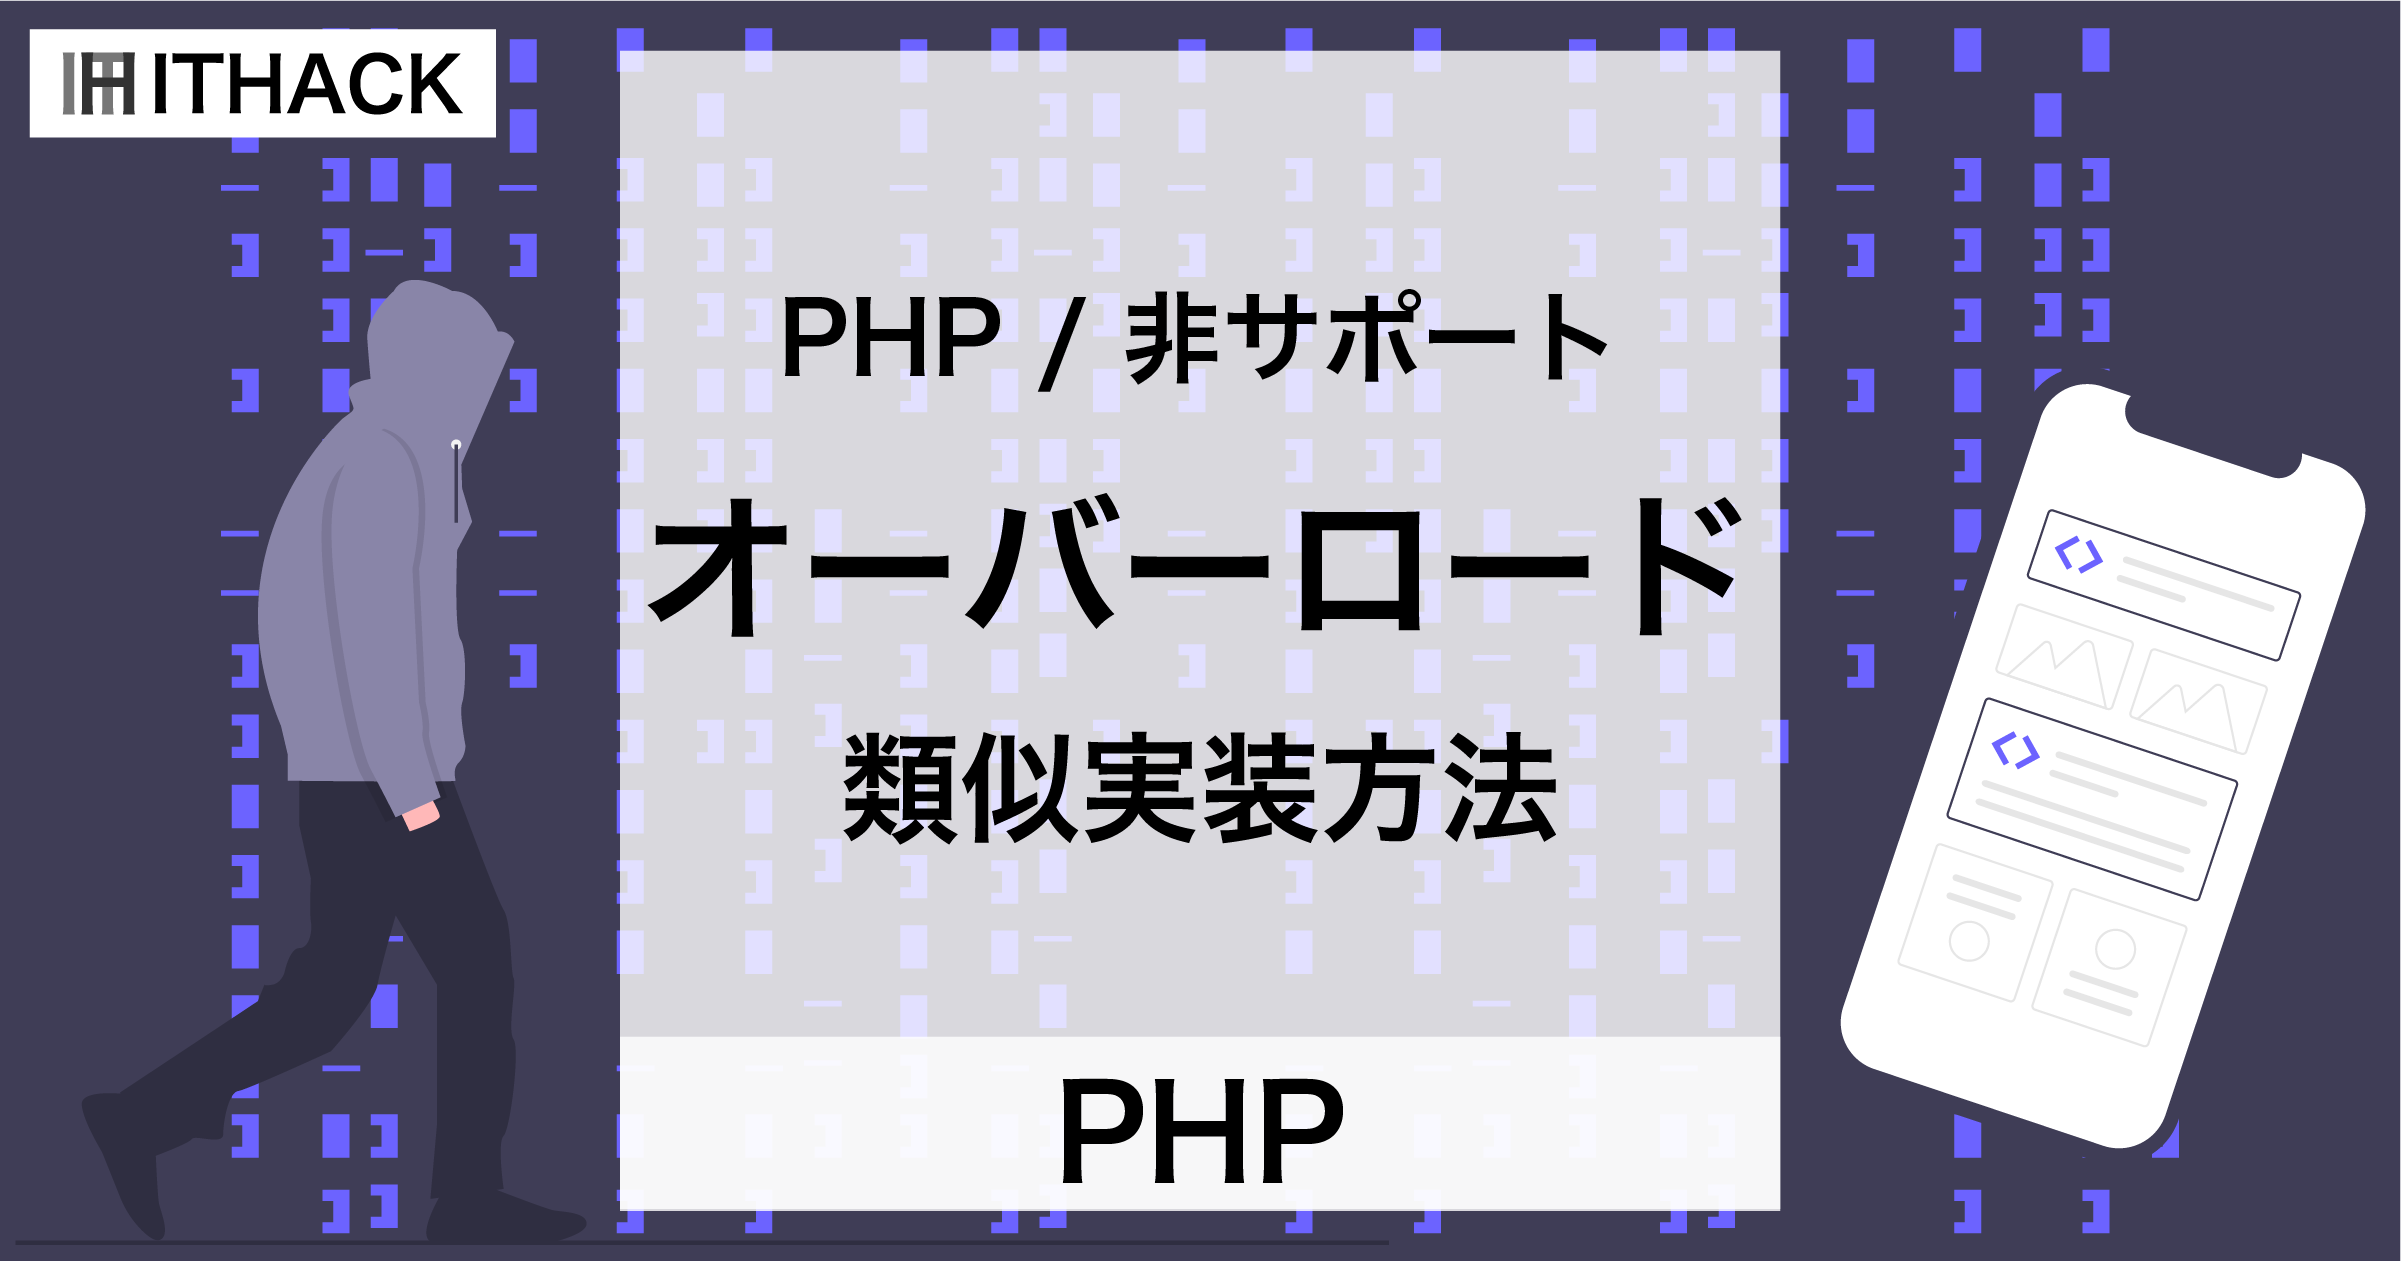 【PHP】オーバーロード - PHPは可変長引数リストで類似実装する